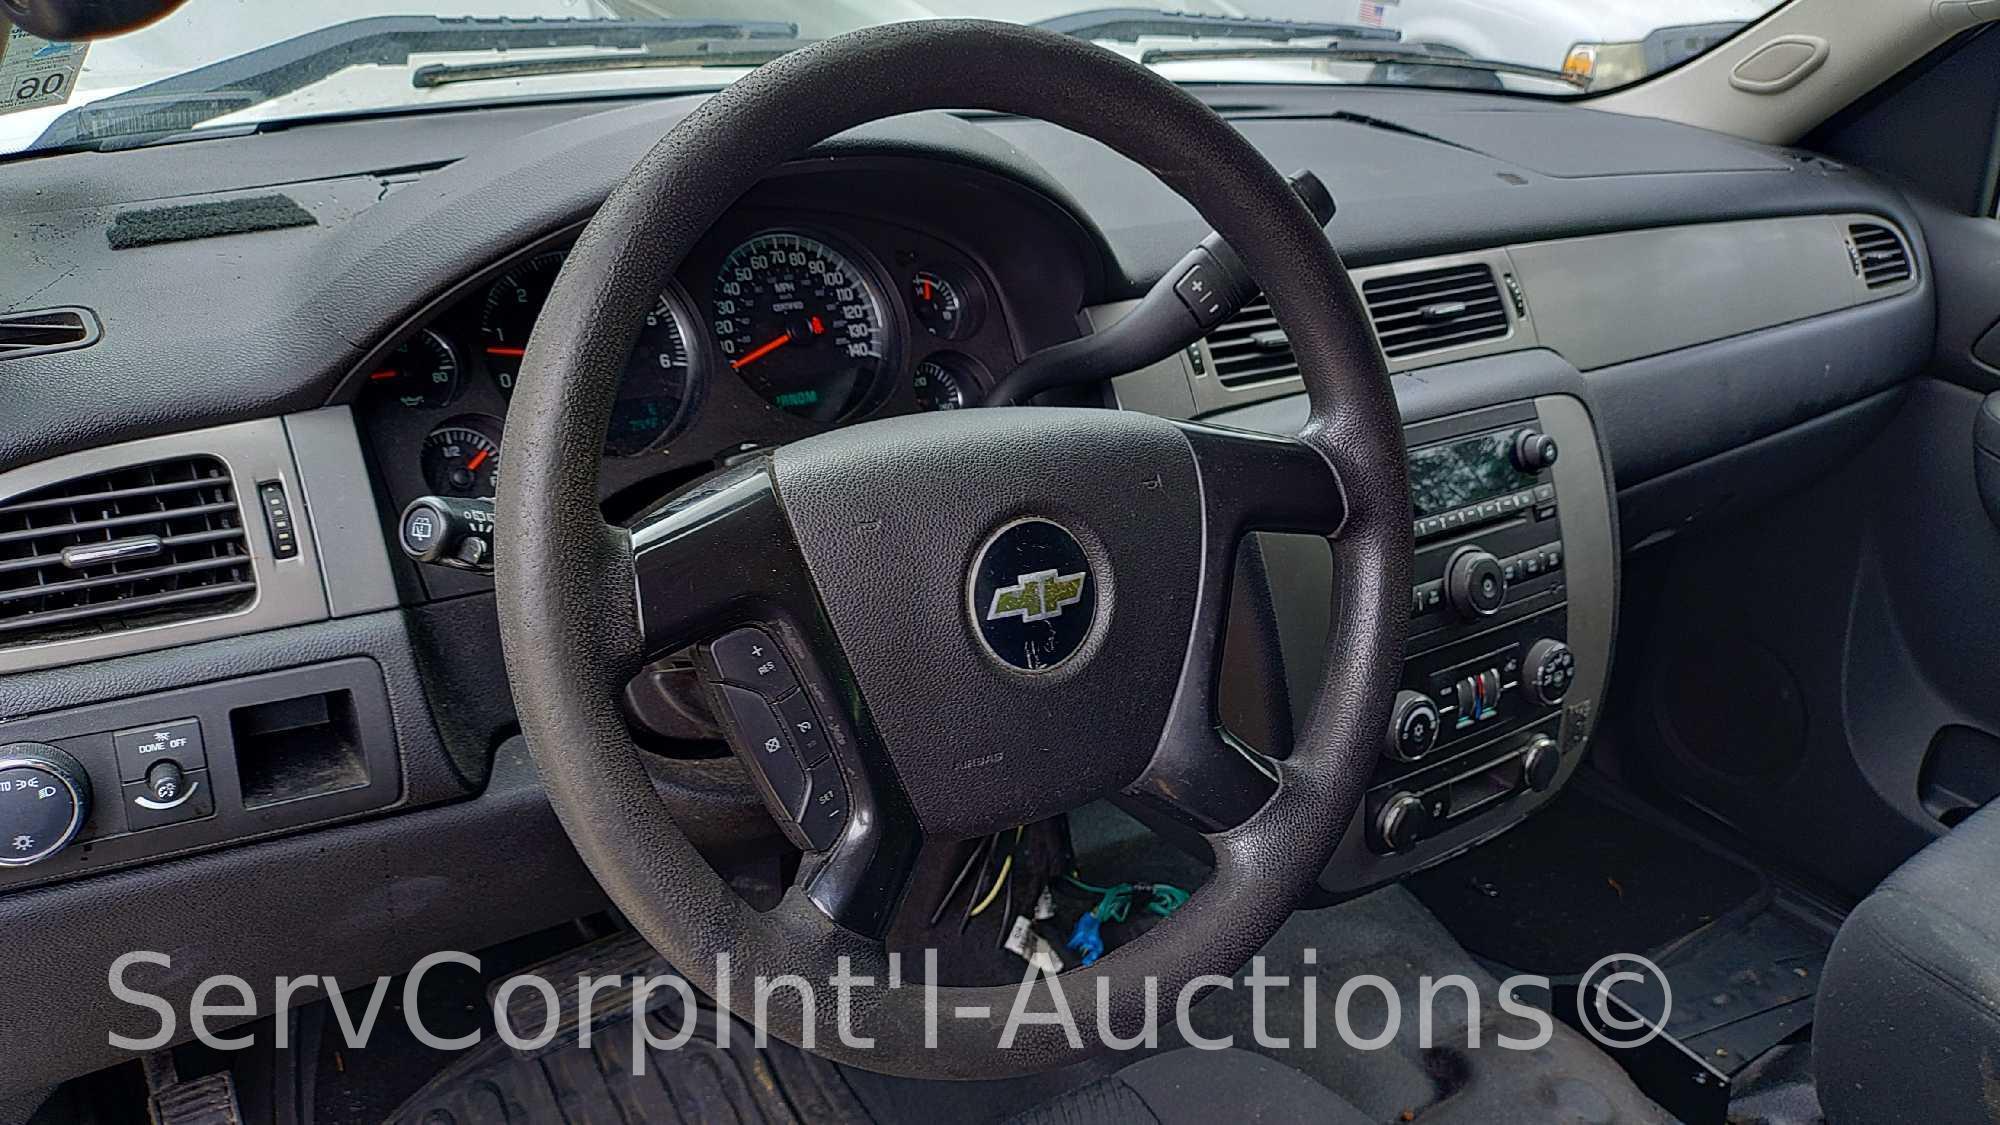 2013 Chevrolet Tahoe Multipurpose Vehicle (MPV), VIN # 1GNLC2E04DR351625